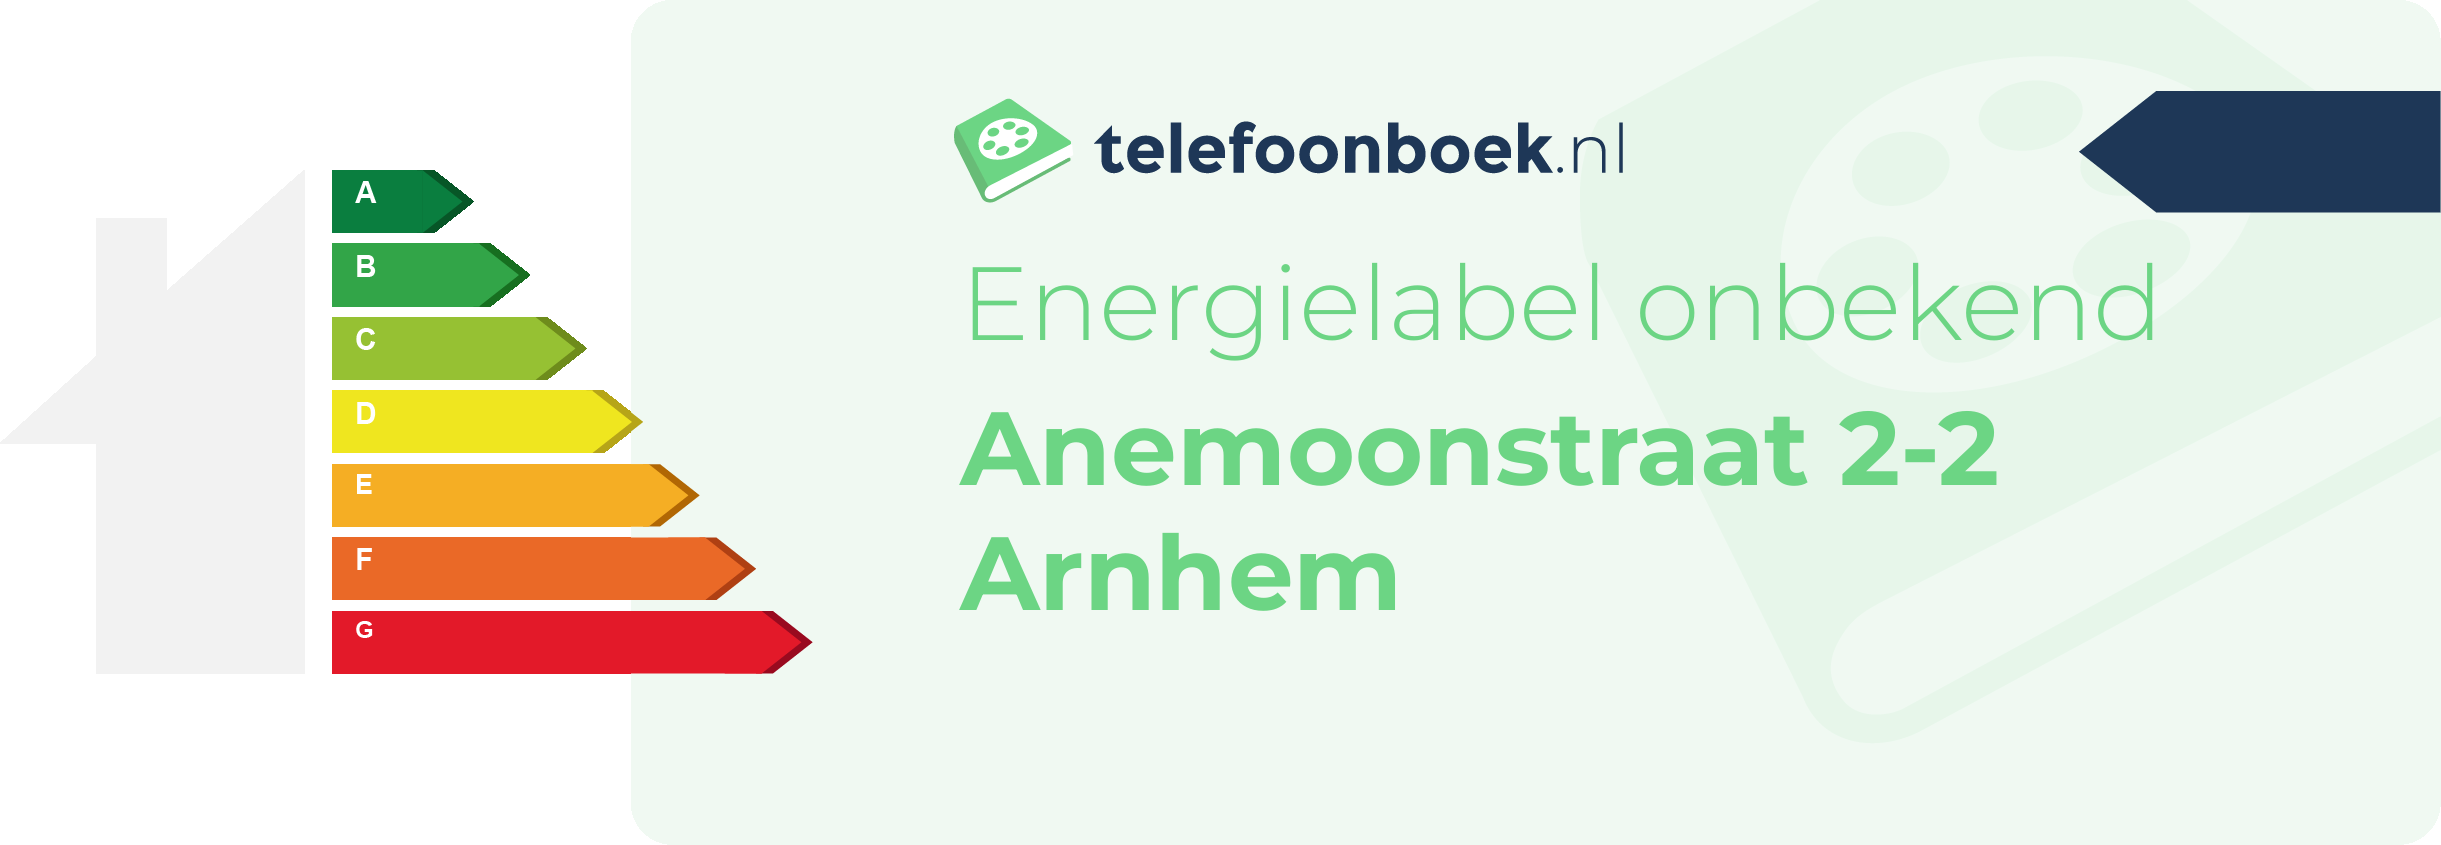 Energielabel Anemoonstraat 2-2 Arnhem